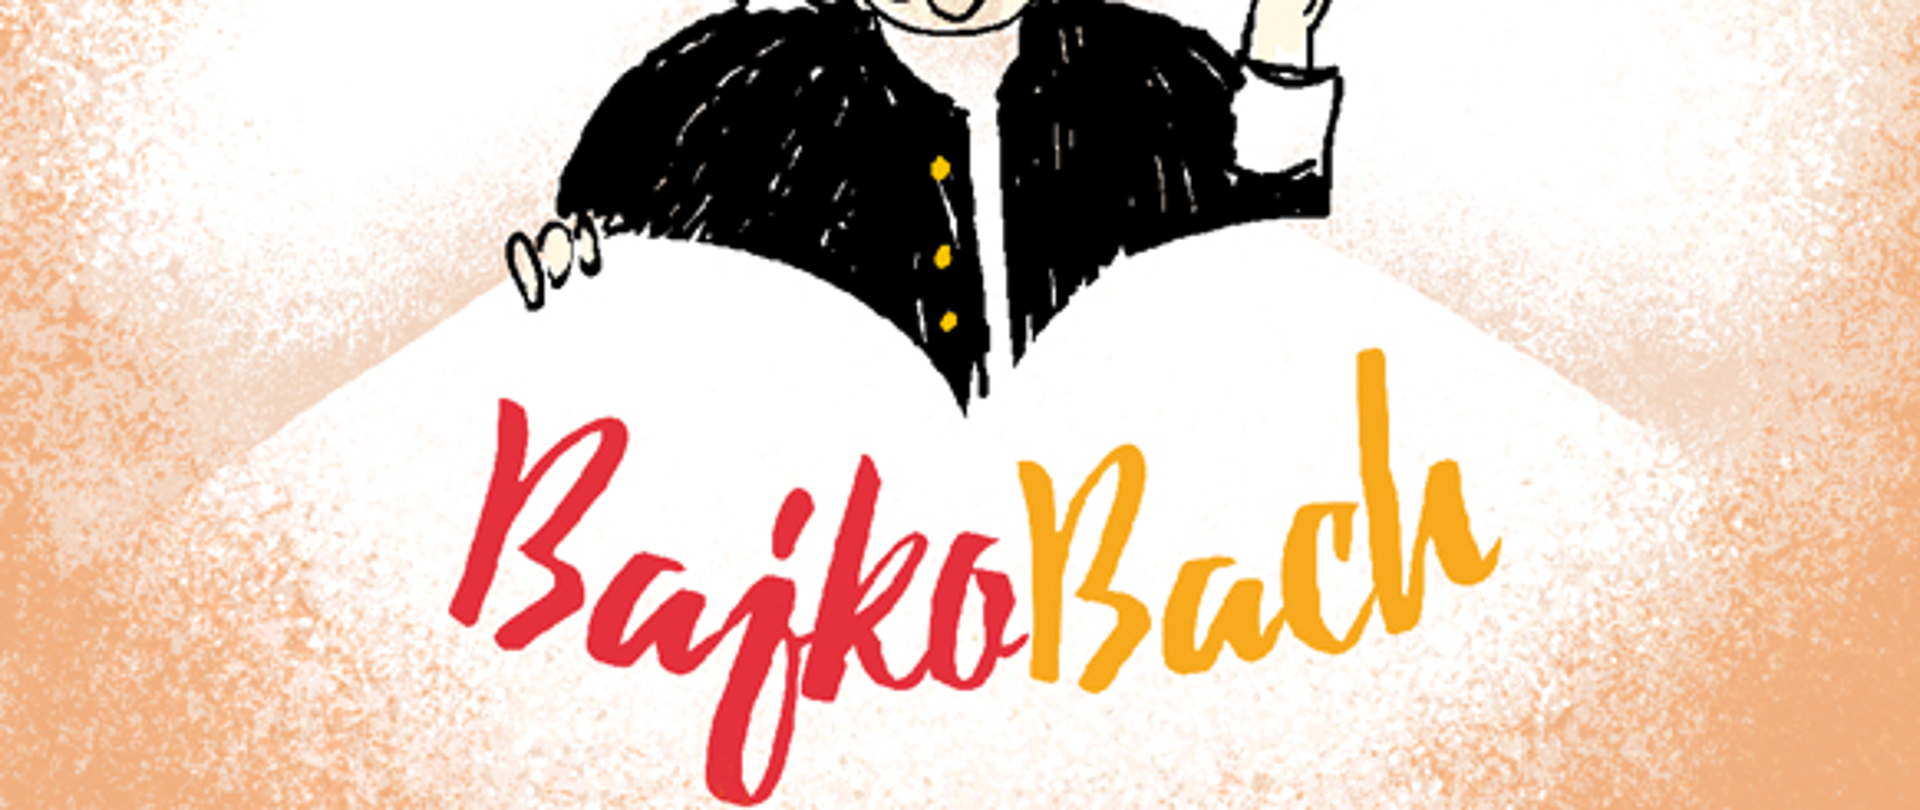 Grafika popiersia Bacha (styl "dziecięcy") w centrum, pod nią napis BajkoBach (w kolorach czerwonym i żółtym). Tło biało-pomarańczowe.